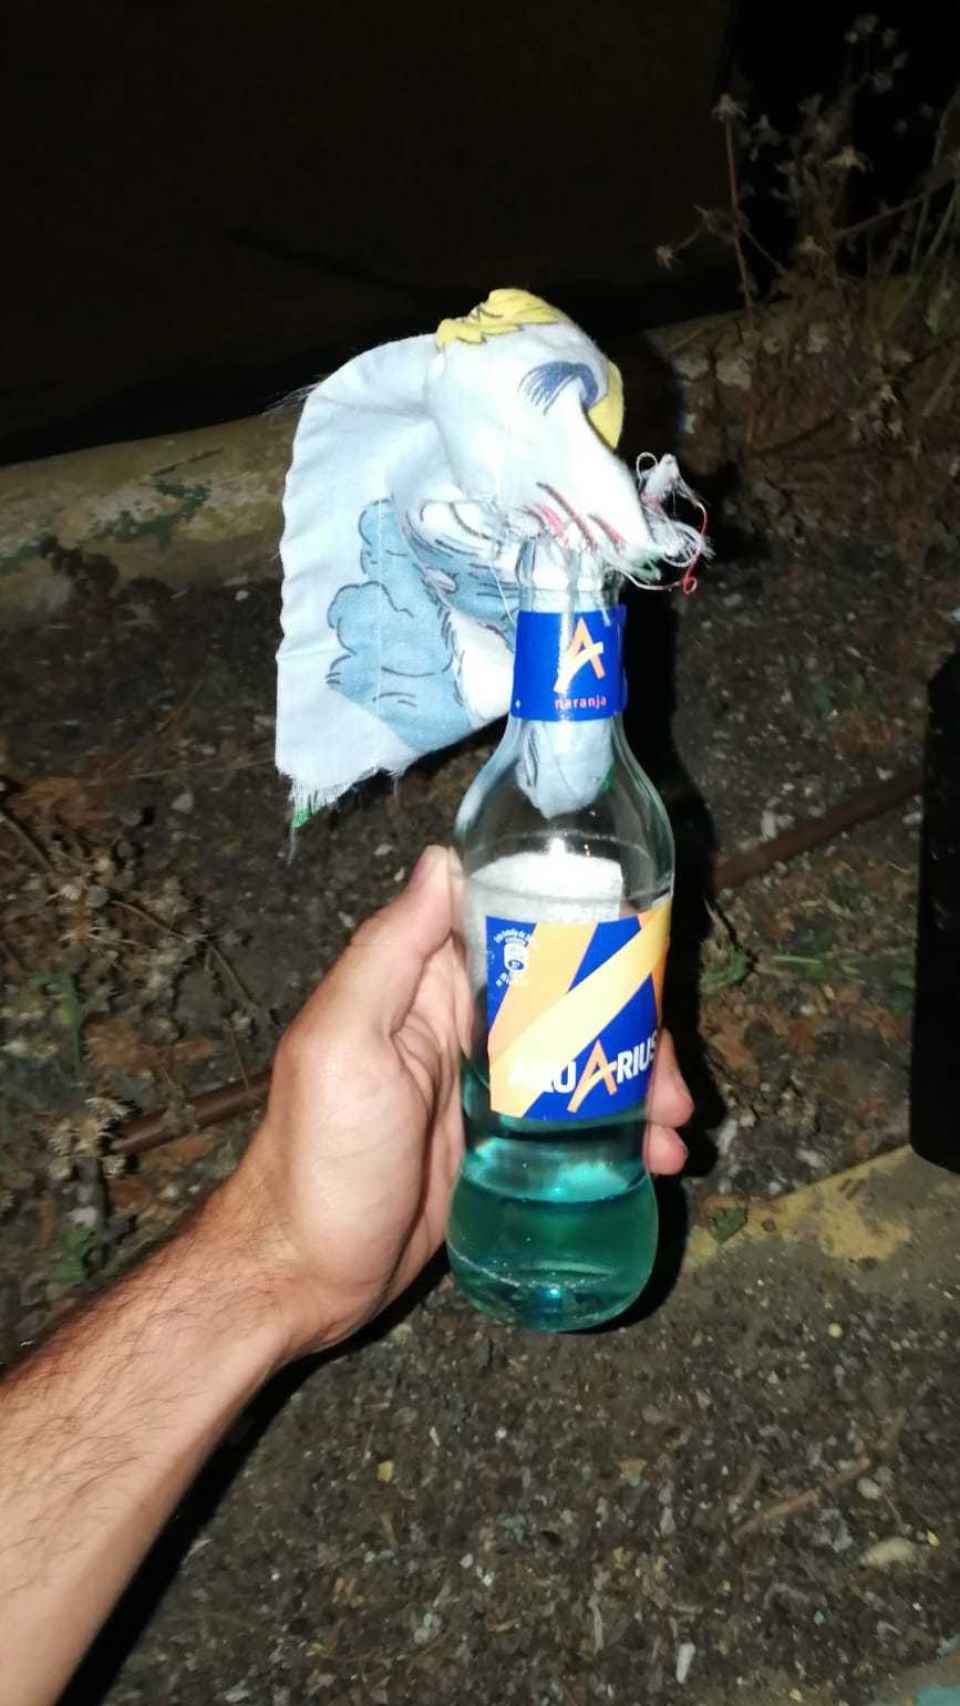 Uno de los cócteles molotov requisados por la Policía Nacional.